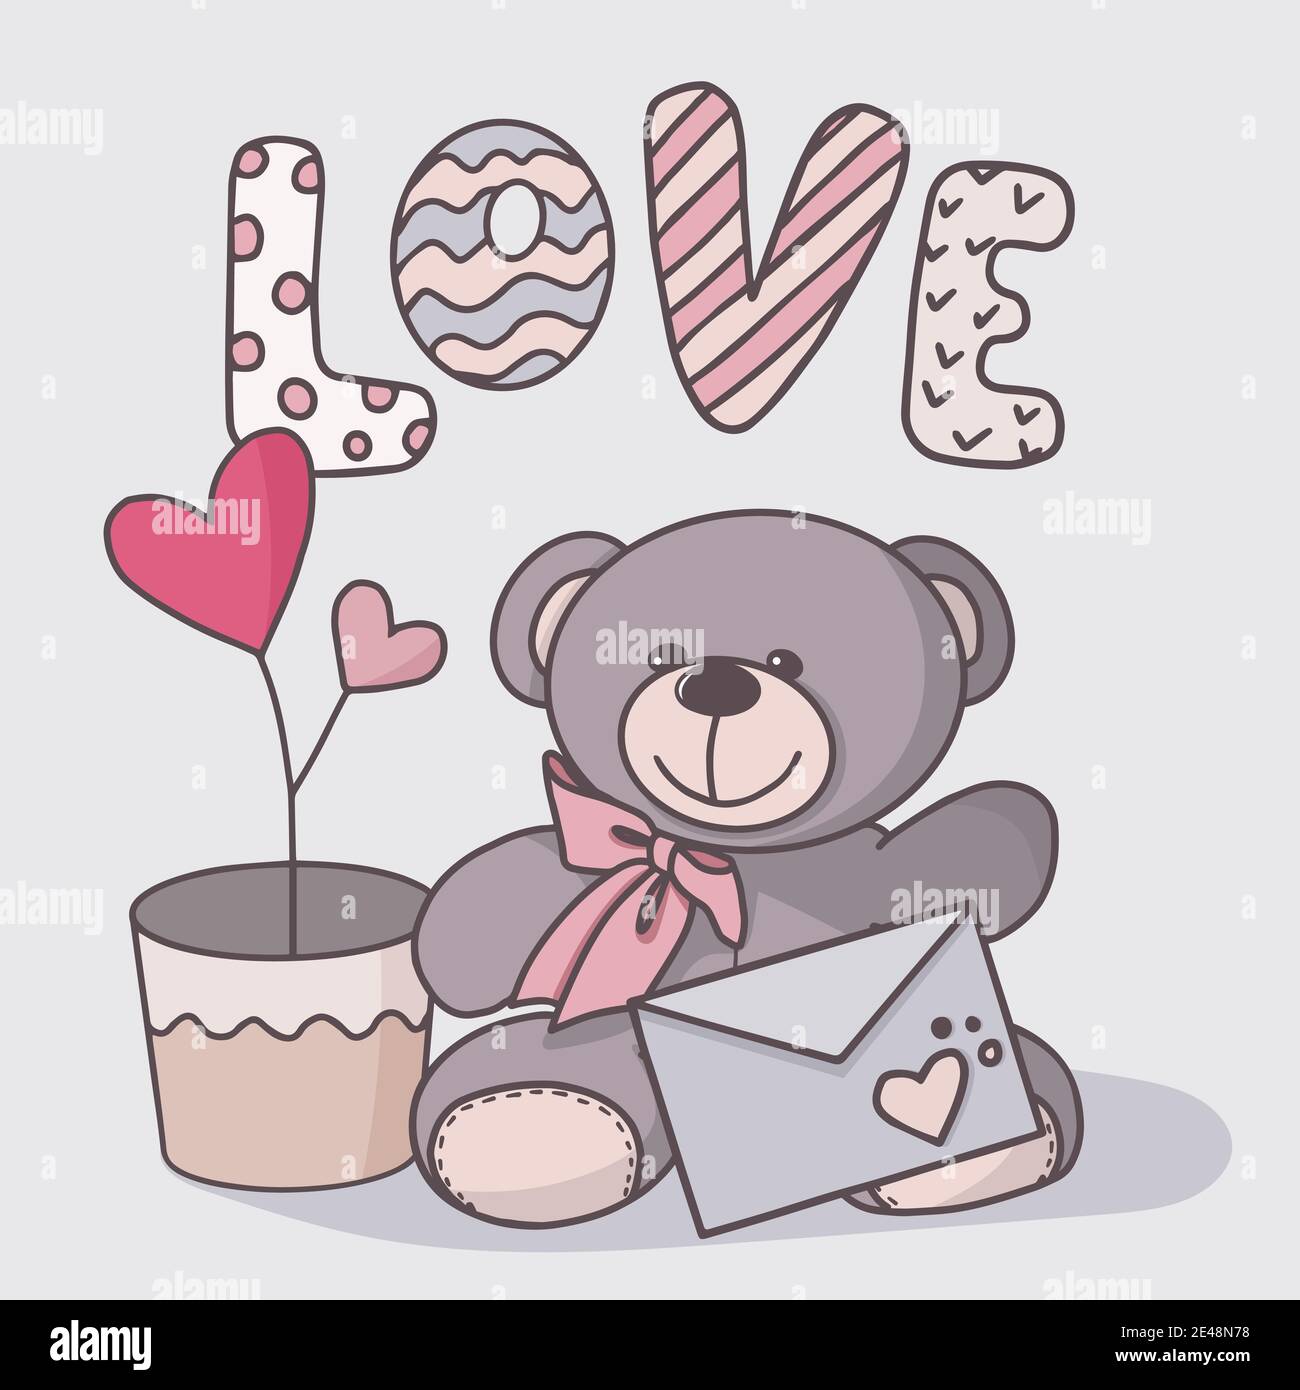 Vektor handgezeichnete Illustration eines niedlichen Teddybären. Grußkarte für Valentinstag, Geburtstag, Feiertag. Doodle. Stock Vektor